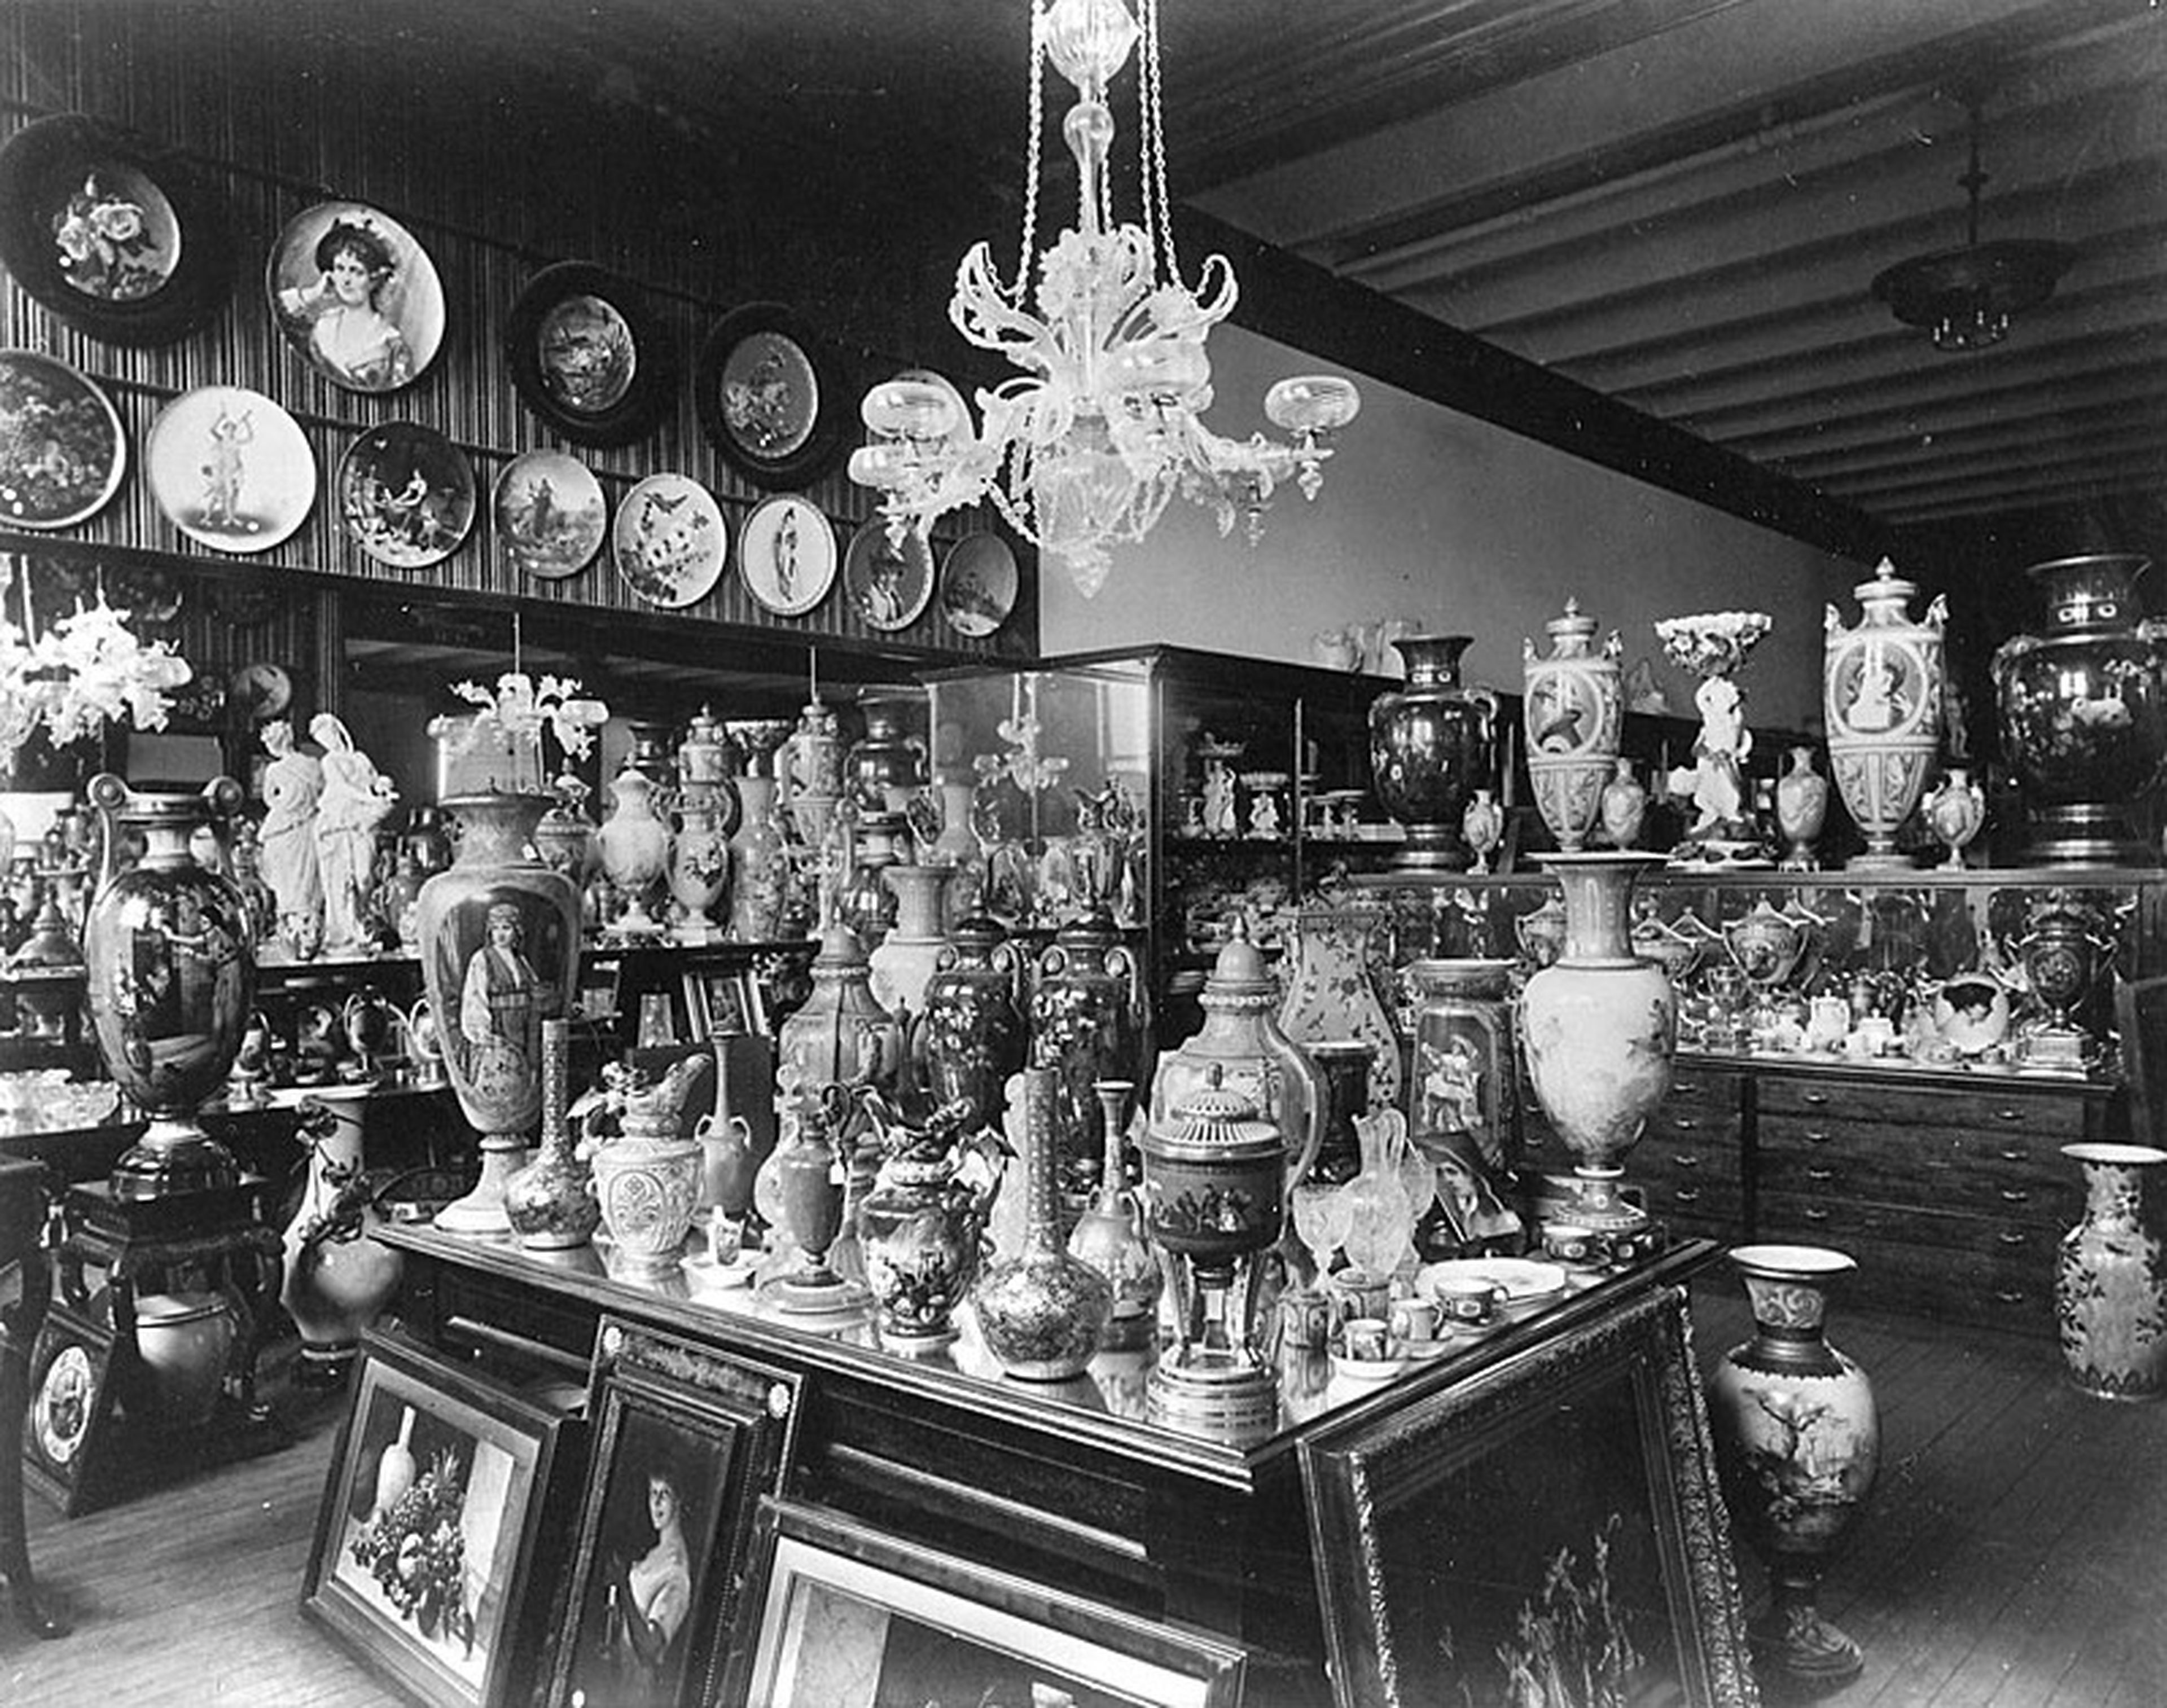 El almacén de Tiffany & Co., en Union Square (Manhattan, Nueva York), lleno de porcelana en una imagen datada alrededor de 1887.